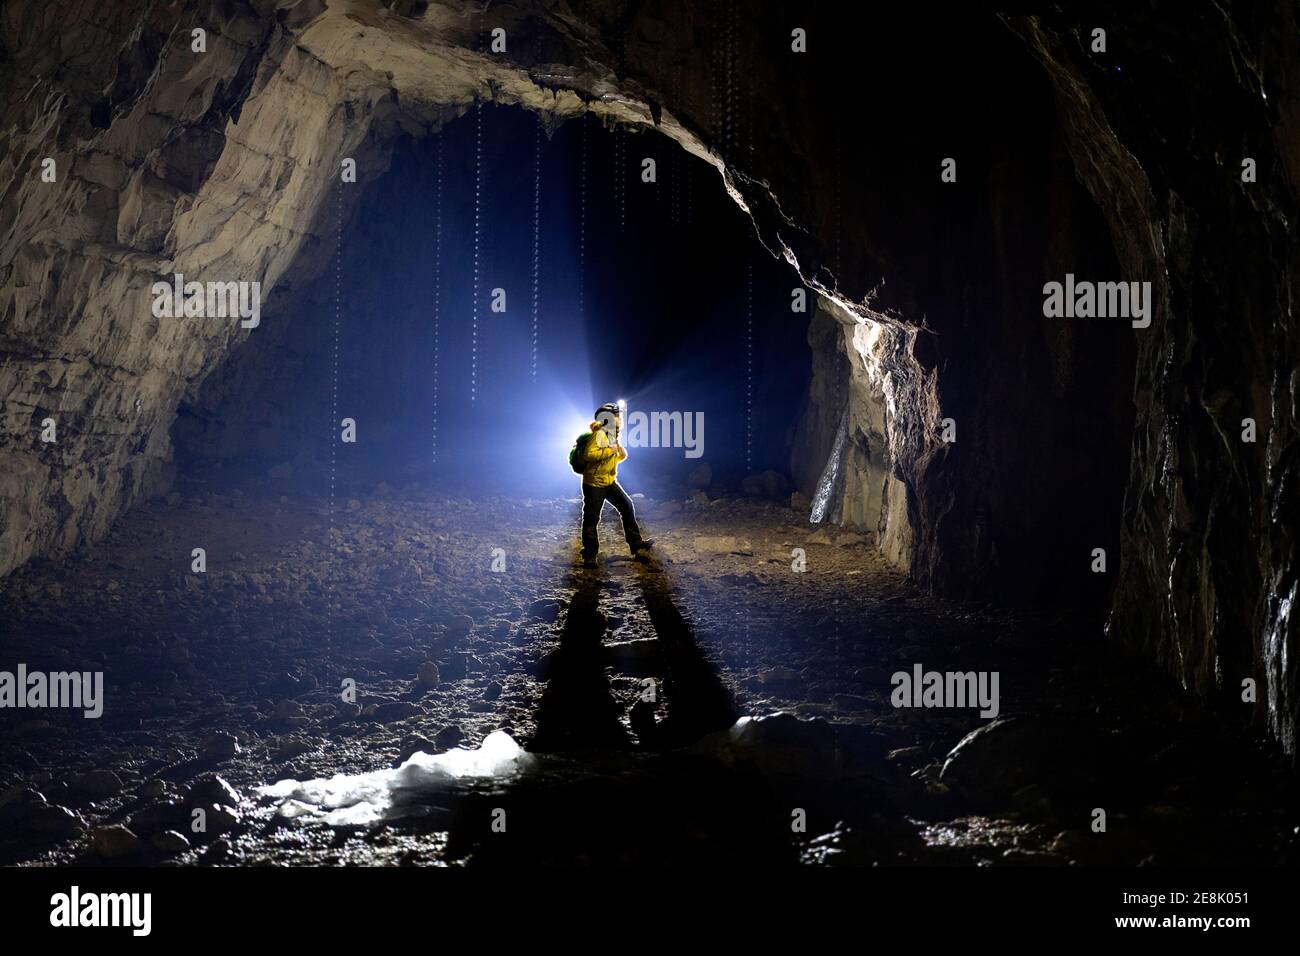 Garçon de 11 ans debout à l'intérieur d'une grotte, illuminé par un contre-jour, des stalagmites fondues faites de glace à l'avant, la Slovénie Banque D'Images